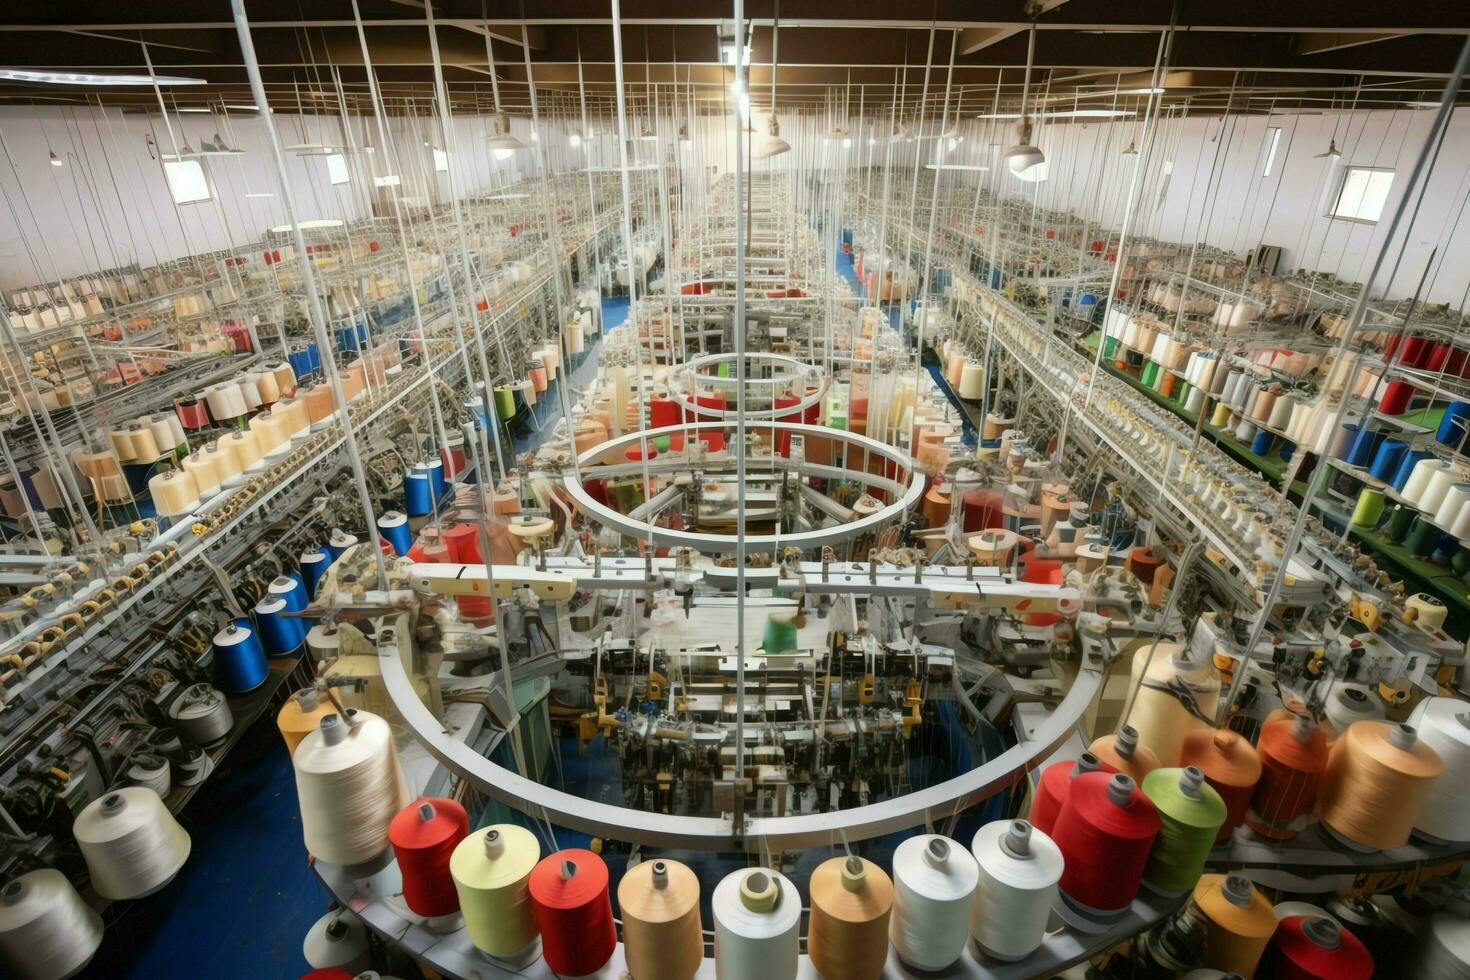 Textil- Stoff Fabrik Industrie mit Stickerei Maschine, Stricken oder Spinnen. Nähen Faden Unternehmen Konzept durch ai generiert foto